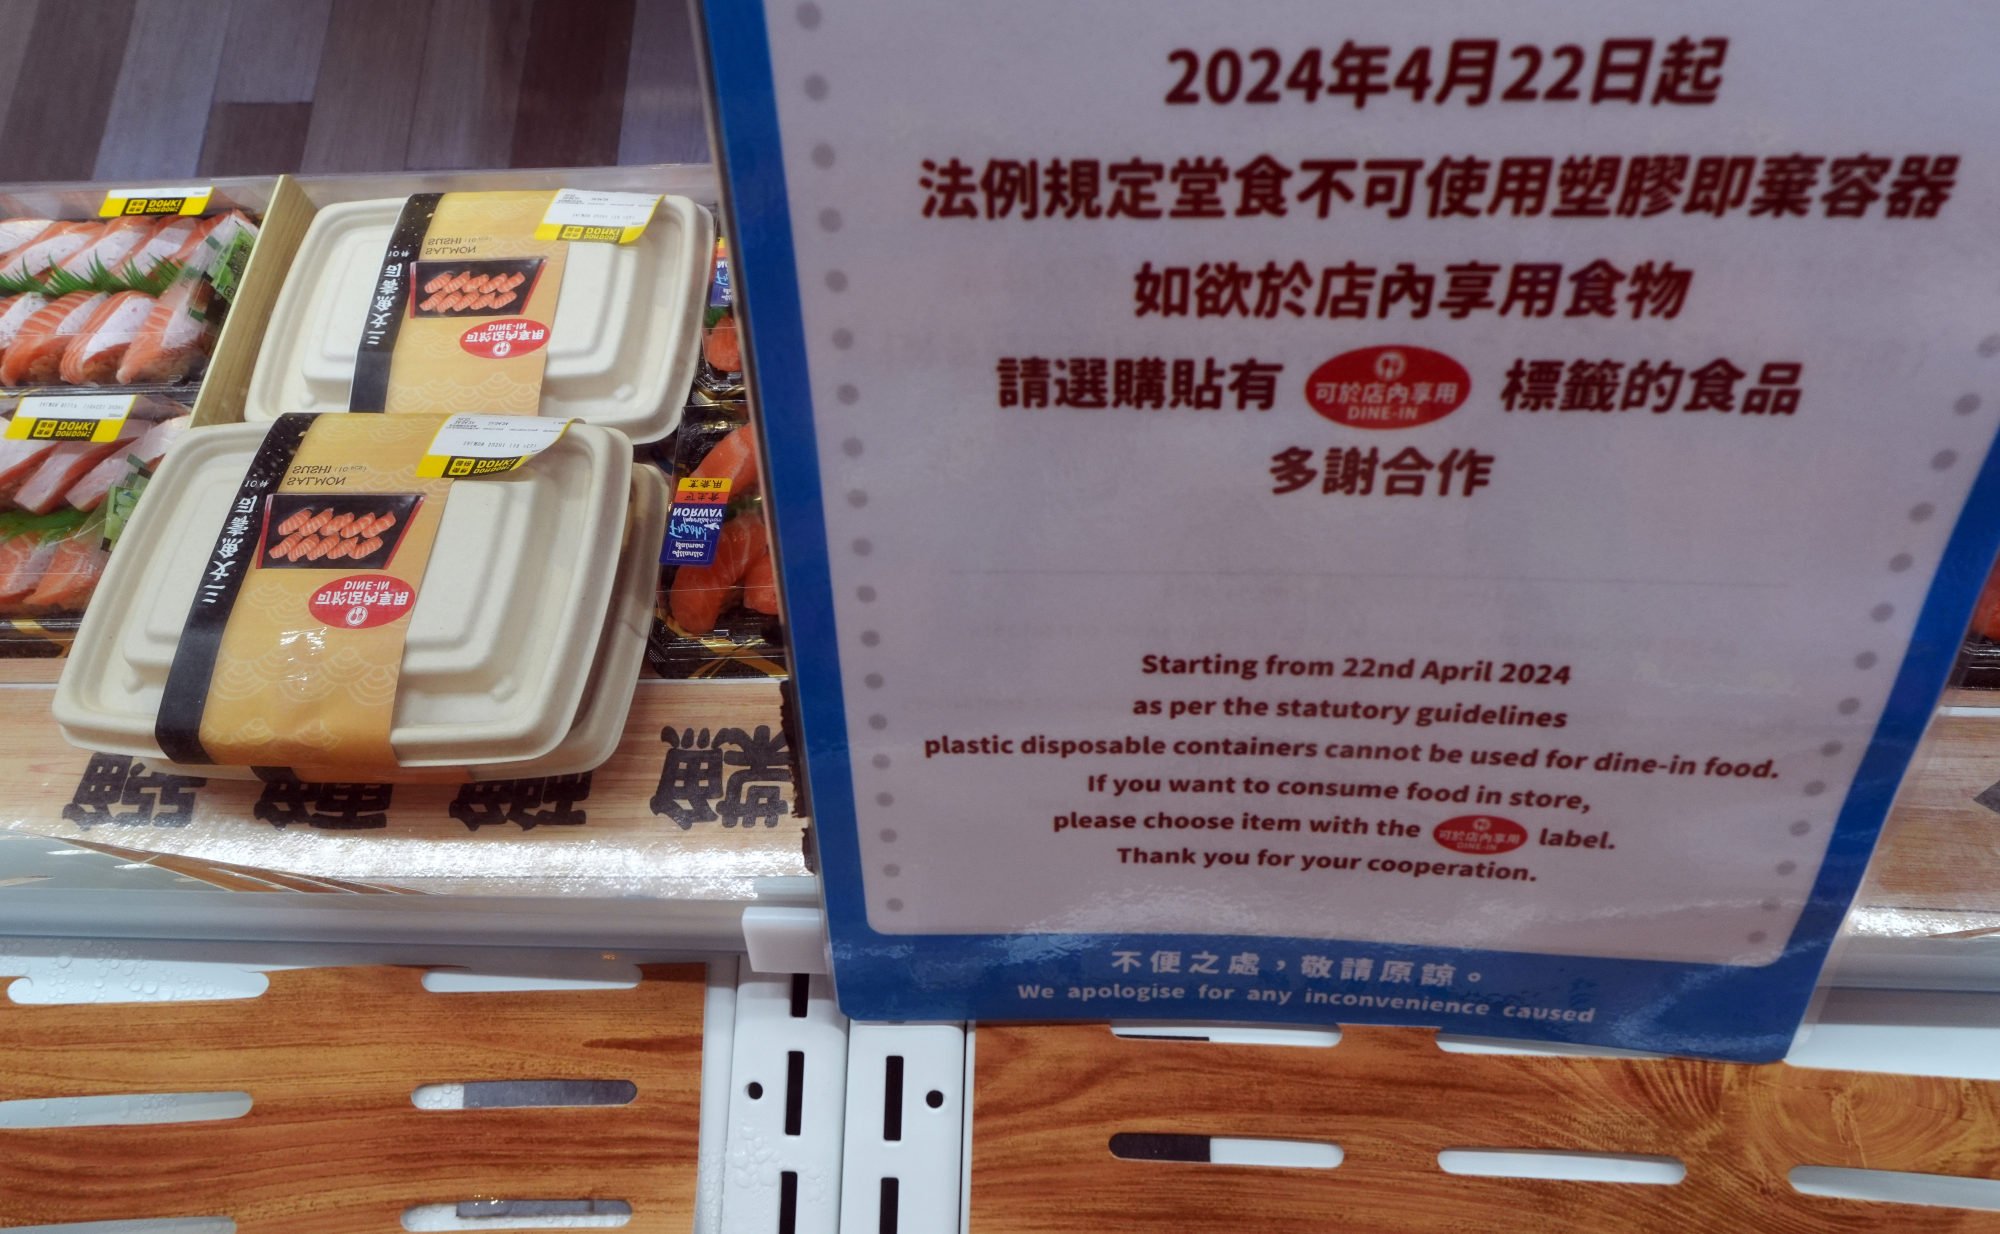 Cómo el sushi se convirtió en un punto delicado de la prohibición de los plásticos en Hong Kong. El Post tiene respuestas